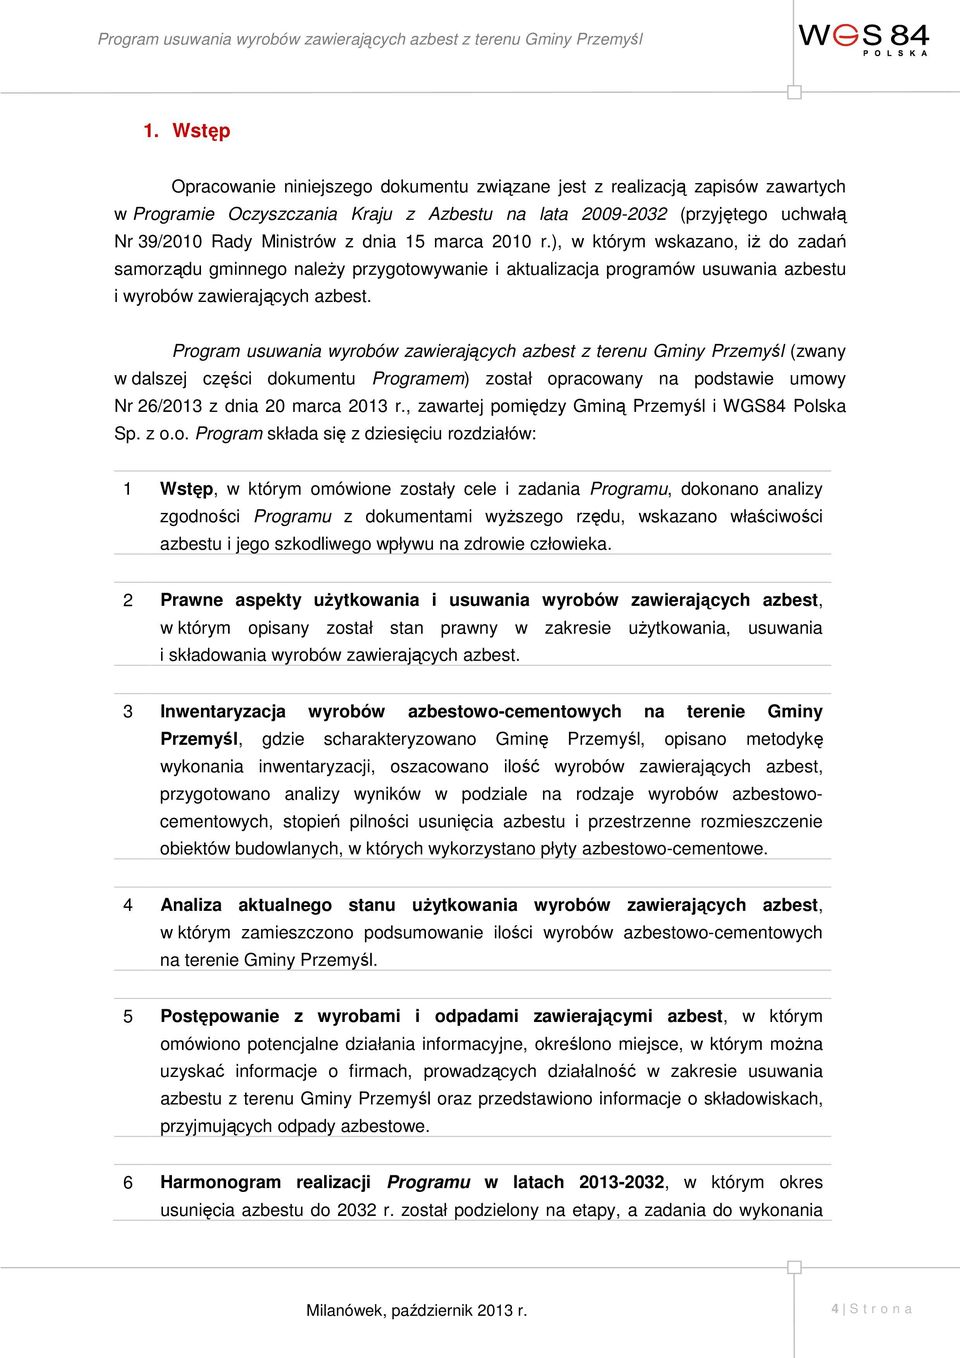 Program usuwania wyrobów zawierających azbest z terenu Gminy Przemyśl (zwany w dalszej części dokumentu Programem) został opracowany na podstawie umowy Nr 26/2013 z dnia 20 marca 2013 r.